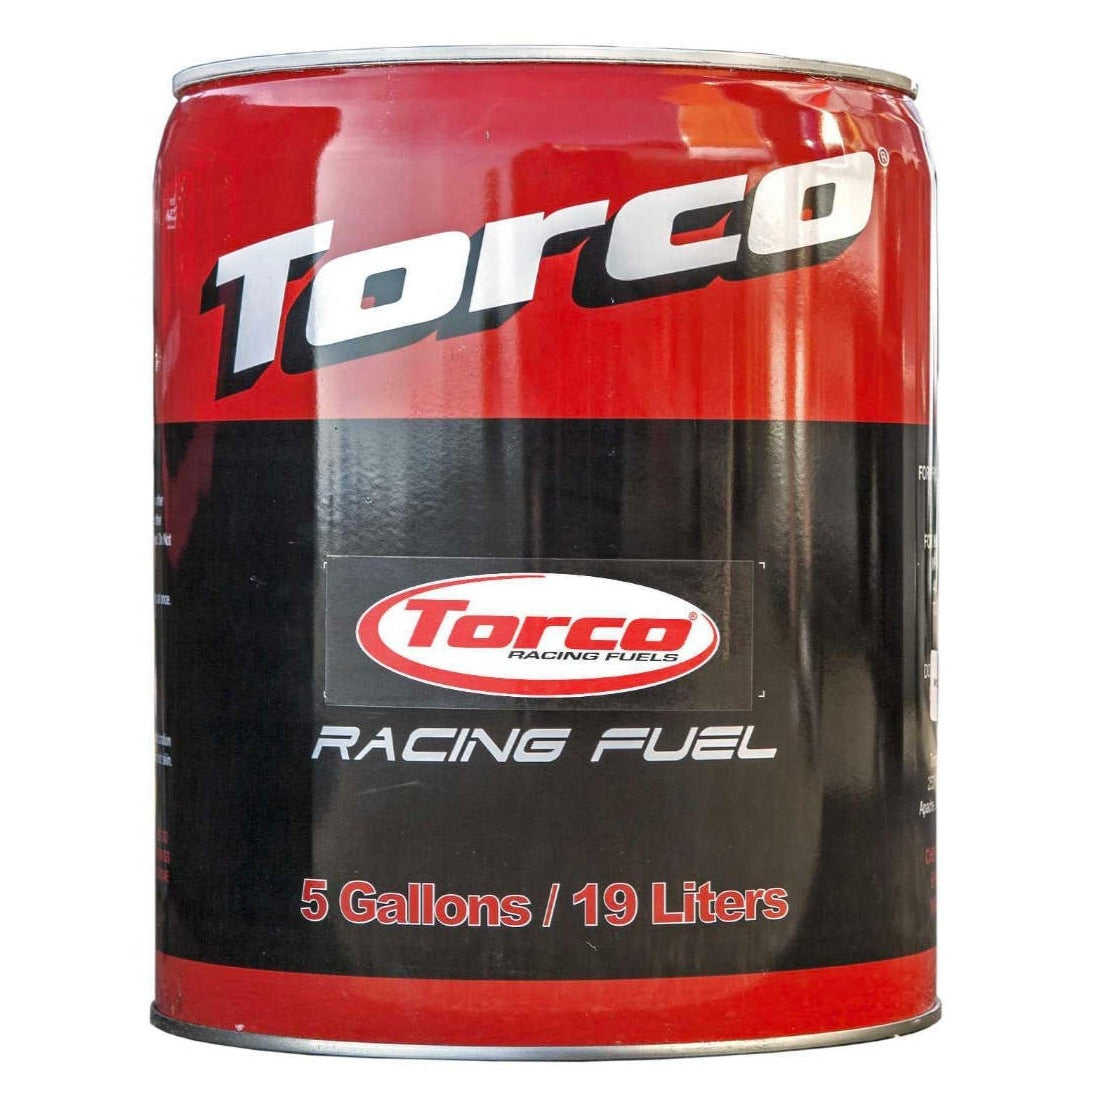 Torco Race Fuel 114 octane Leaded